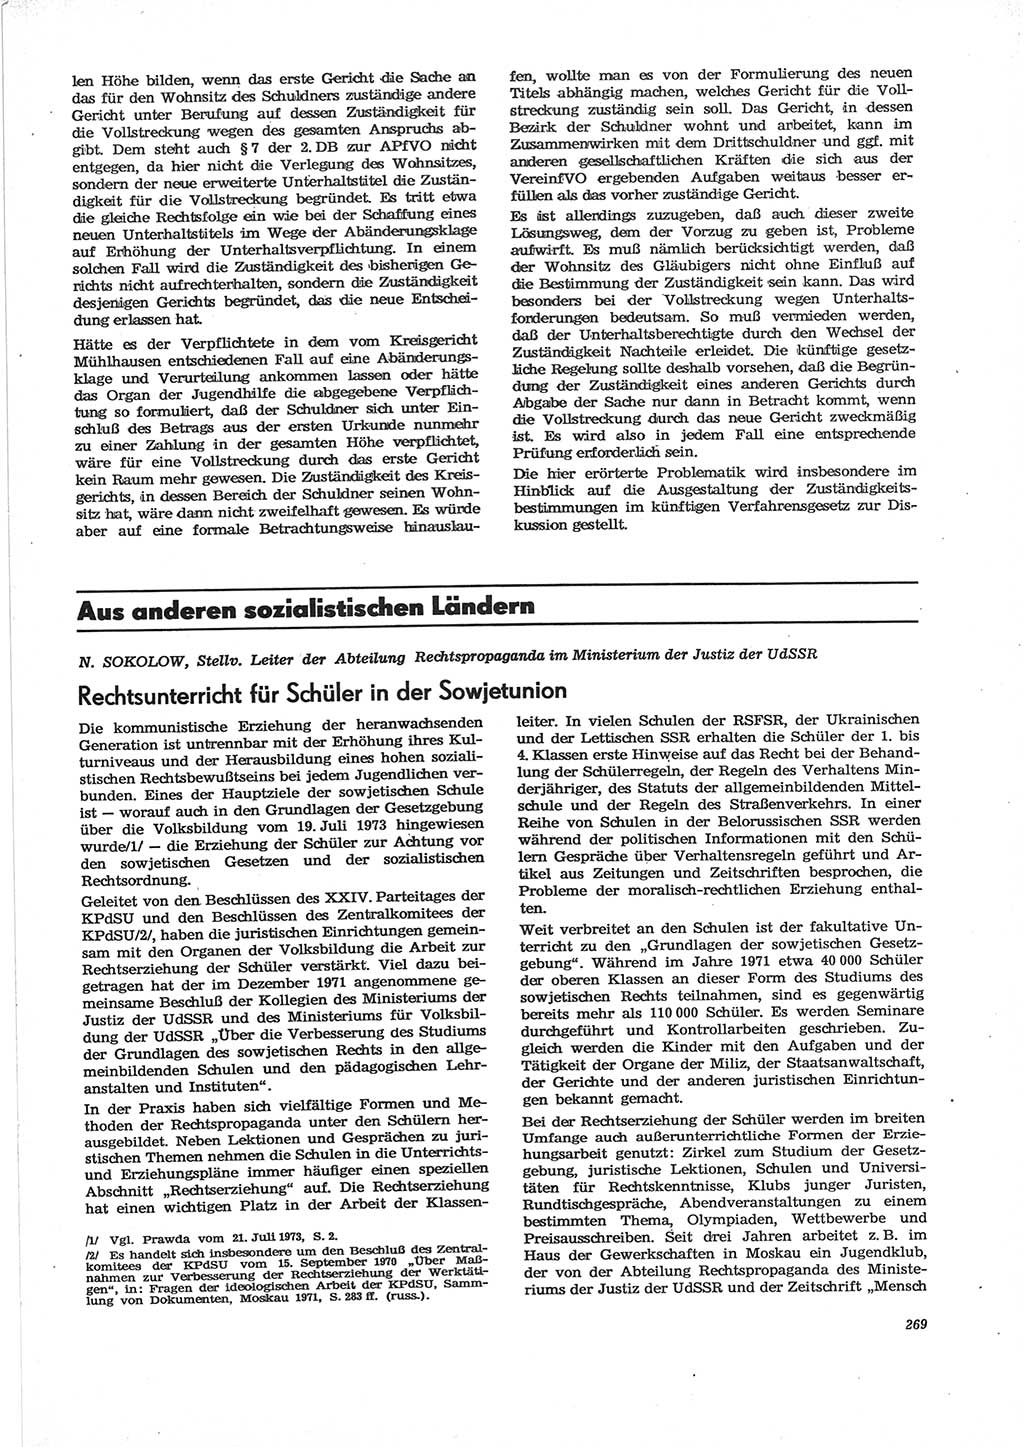 Neue Justiz (NJ), Zeitschrift für Recht und Rechtswissenschaft [Deutsche Demokratische Republik (DDR)], 28. Jahrgang 1974, Seite 269 (NJ DDR 1974, S. 269)